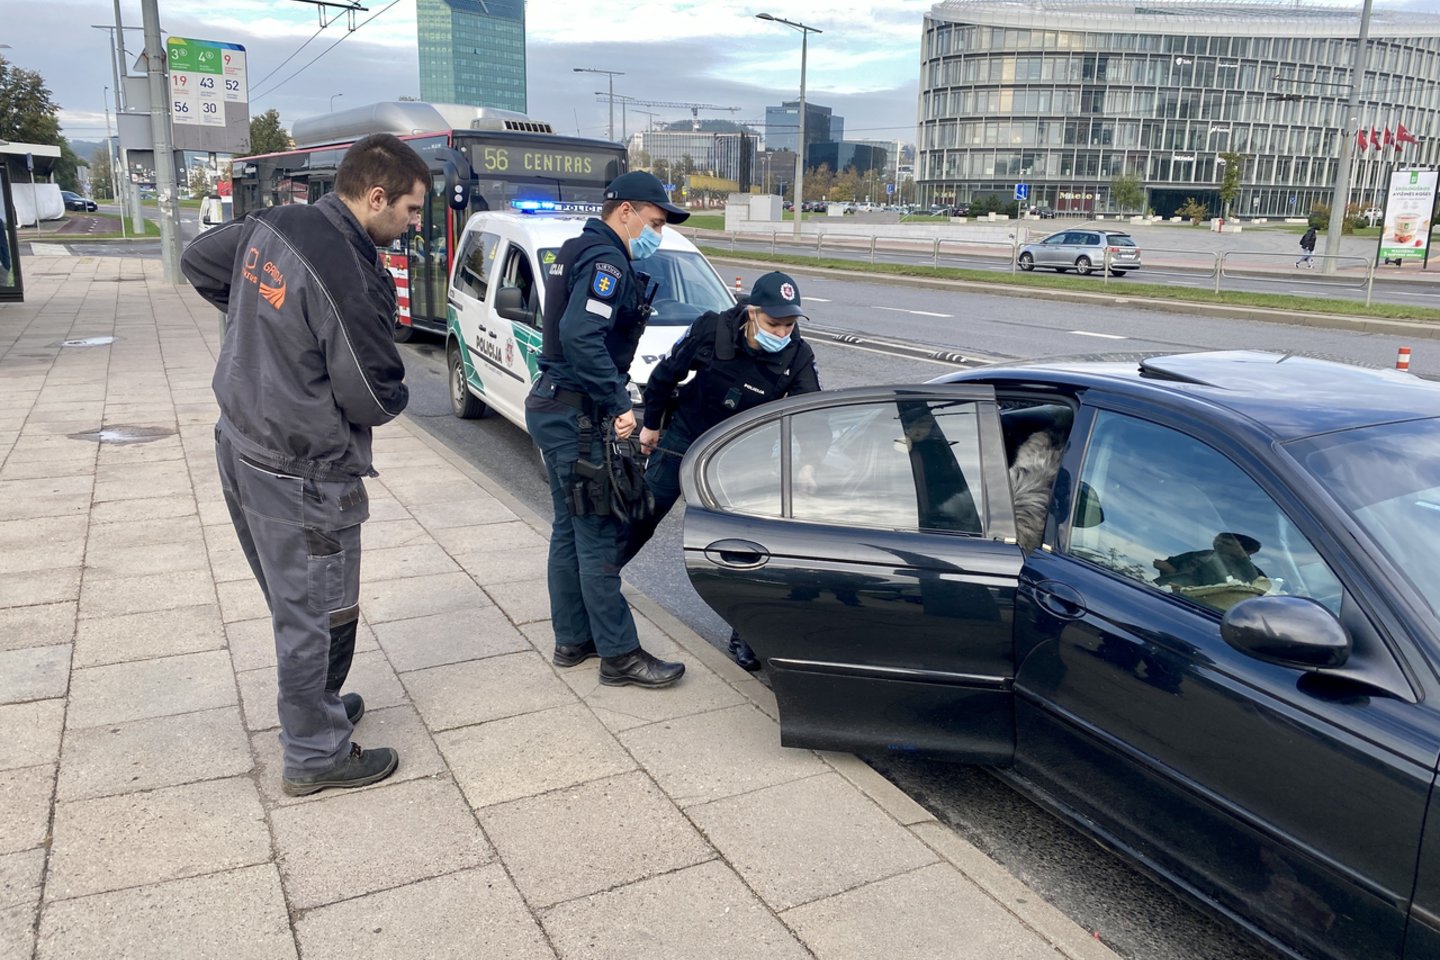 Penktadienio rytą pareigūnai dalyvavo gaudynėse, kurių metu nestojo automobilis „Jaguar“.<br>V.Ščiavinsko nuotr.